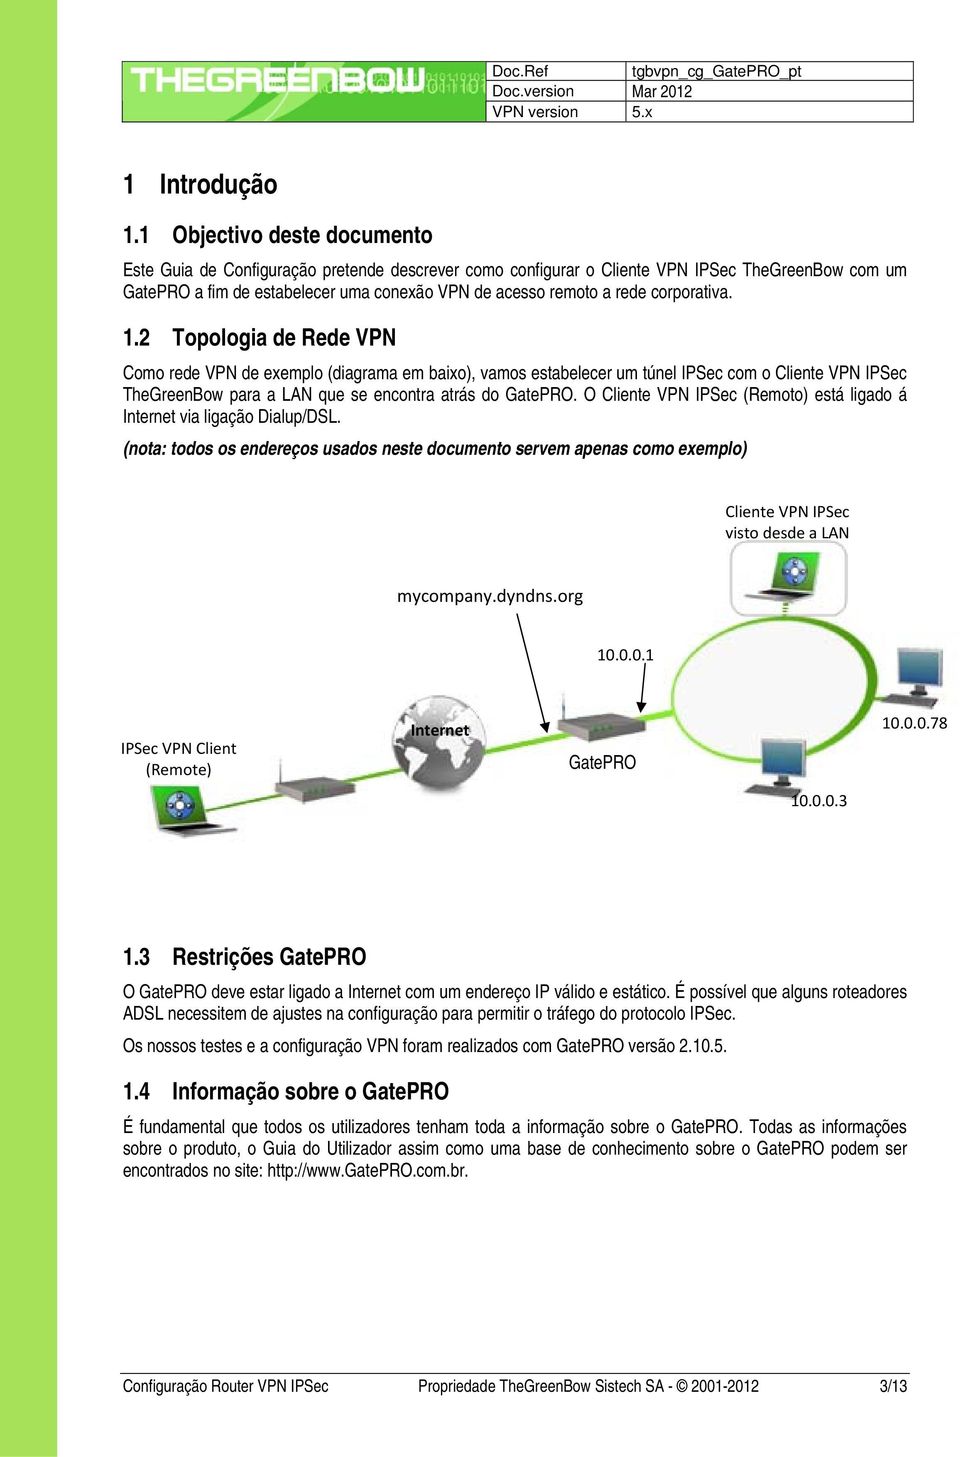 corporativa. 1.2 Topologia de Rede VPN Como rede VPN de exemplo (diagrama em baixo), vamos estabelecer um túnel IPSec com o Cliente VPN IPSec TheGreenBow para a LAN que se encontra atrás do GatePRO.